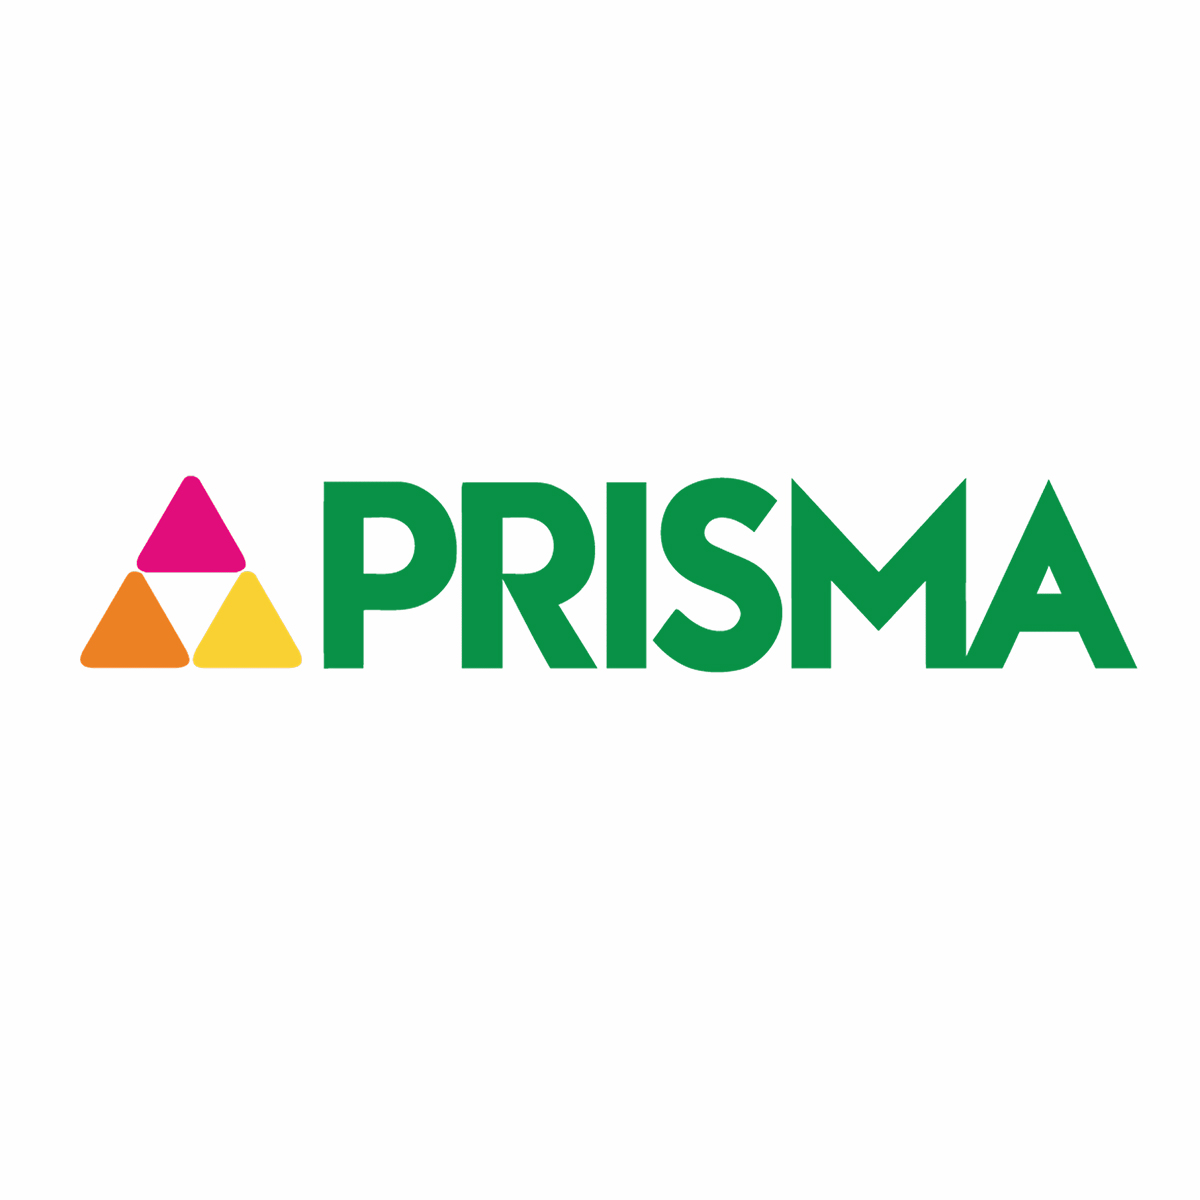 PRISMA, Next Galleria Malls